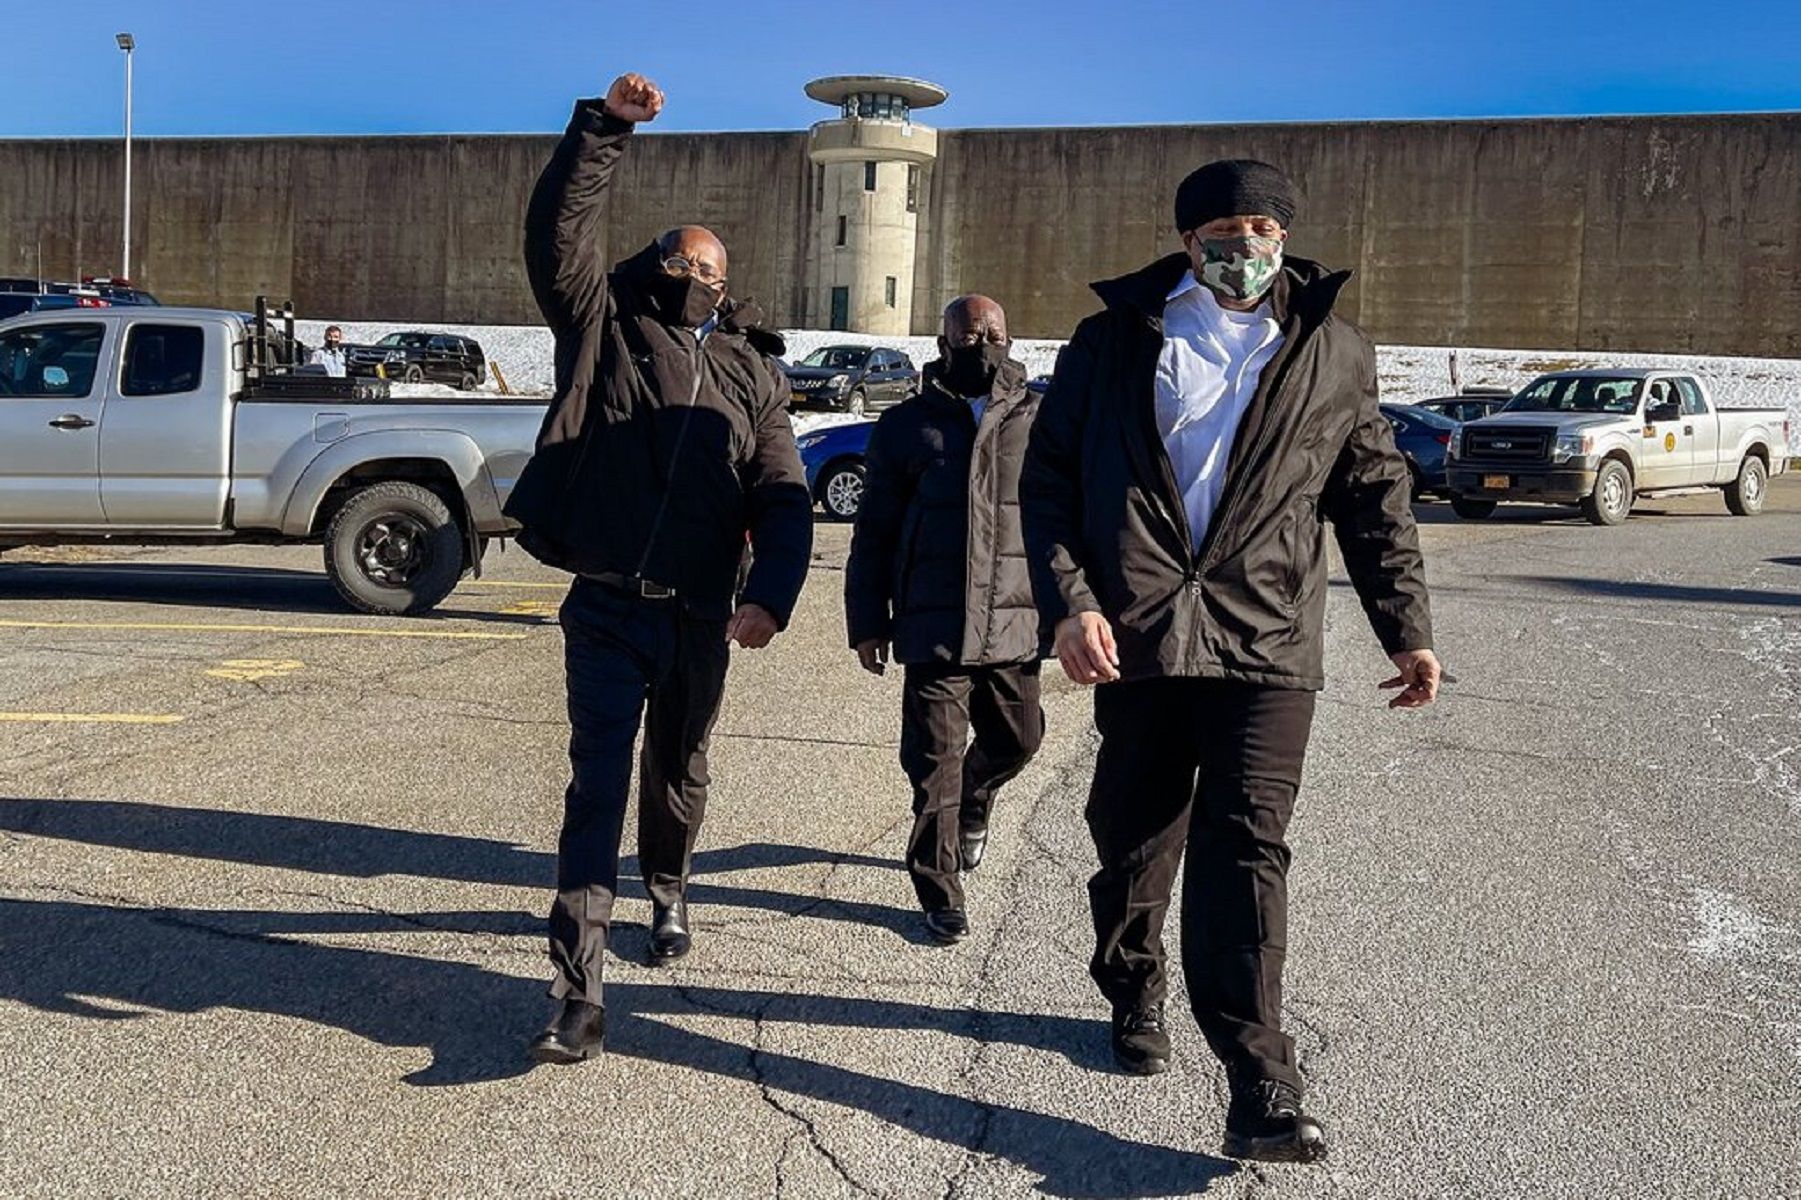 Liberados tras 24 años en la cárcel / Amr Alfiky/The New York Times